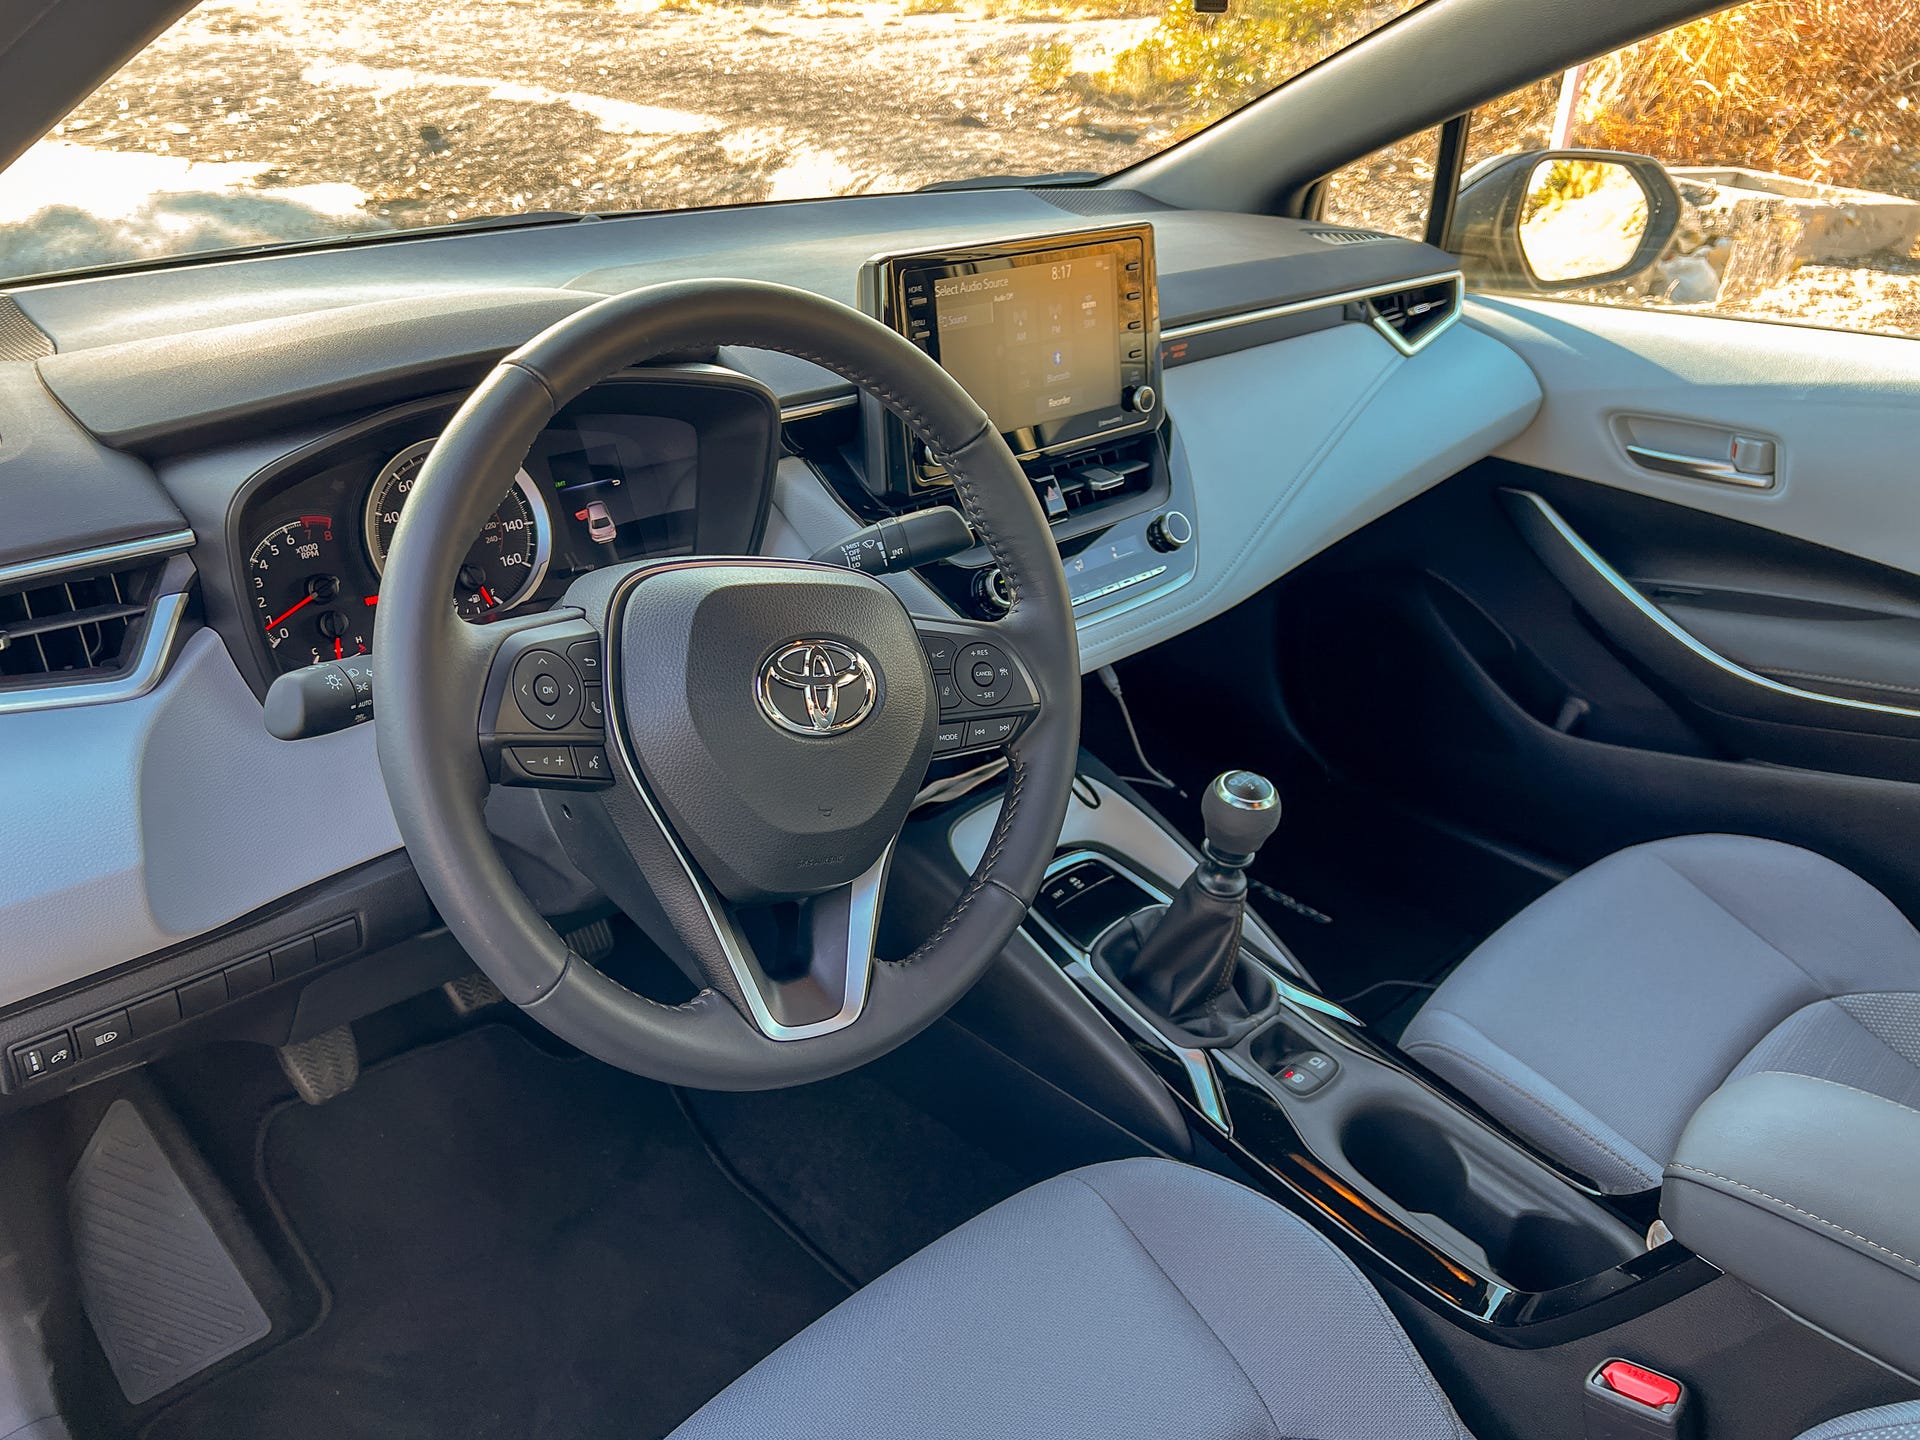 2022 Toyota Corolla Apex interior